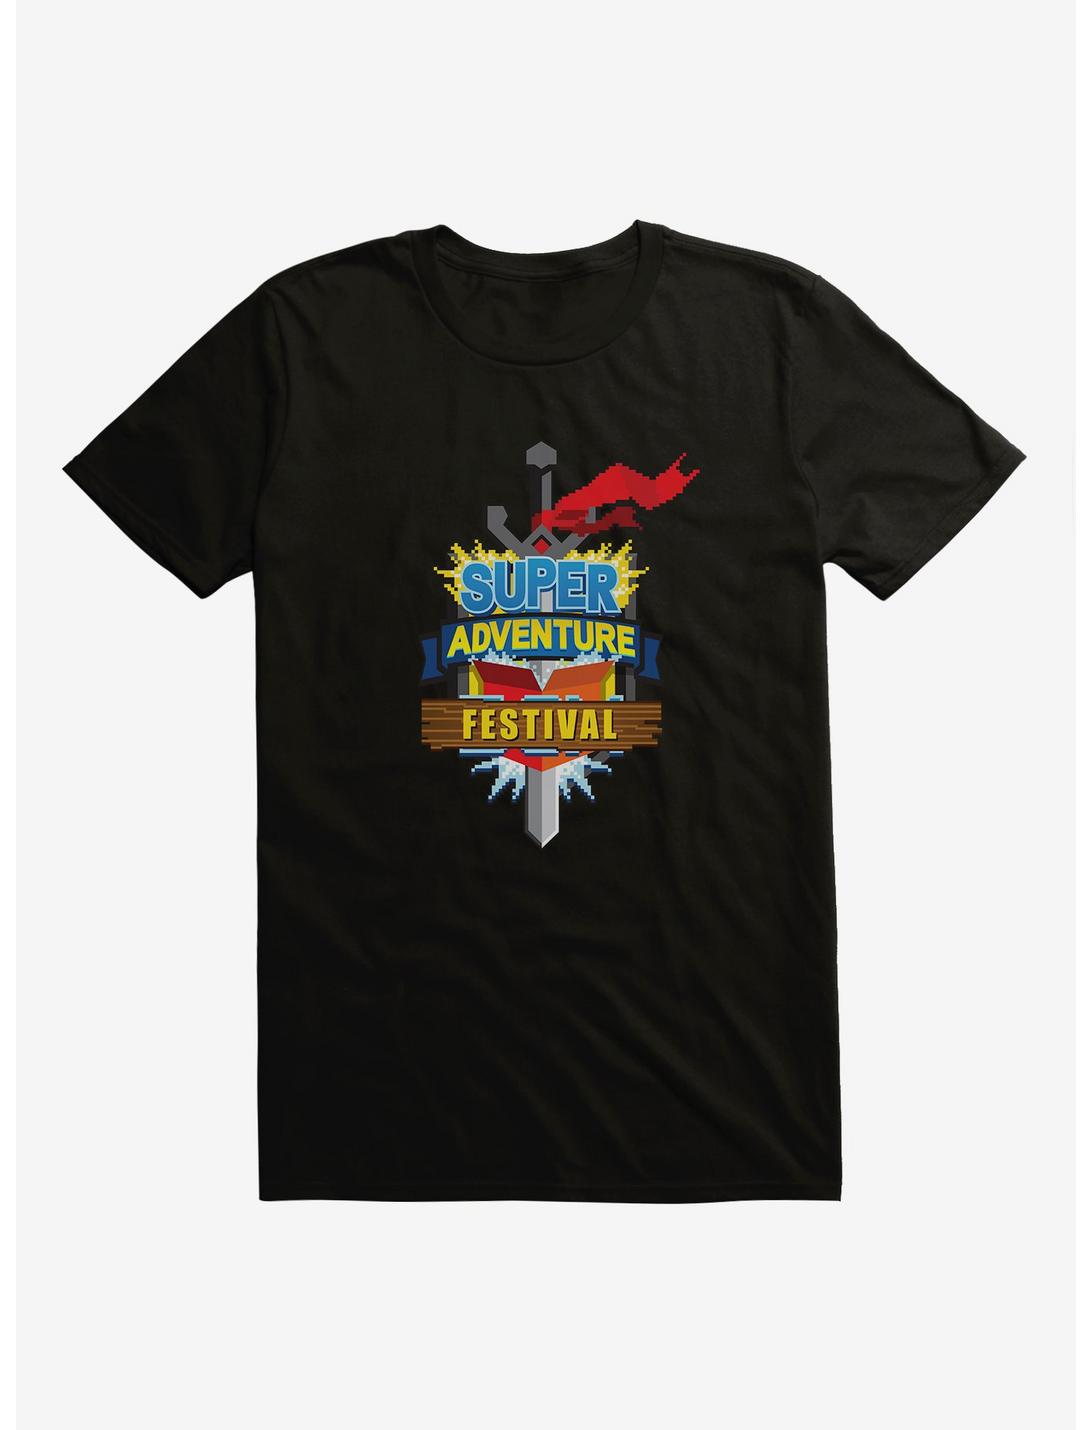 Guild Wars 2 Super Adventure Festival T-Shirt, BLACK, hi-res